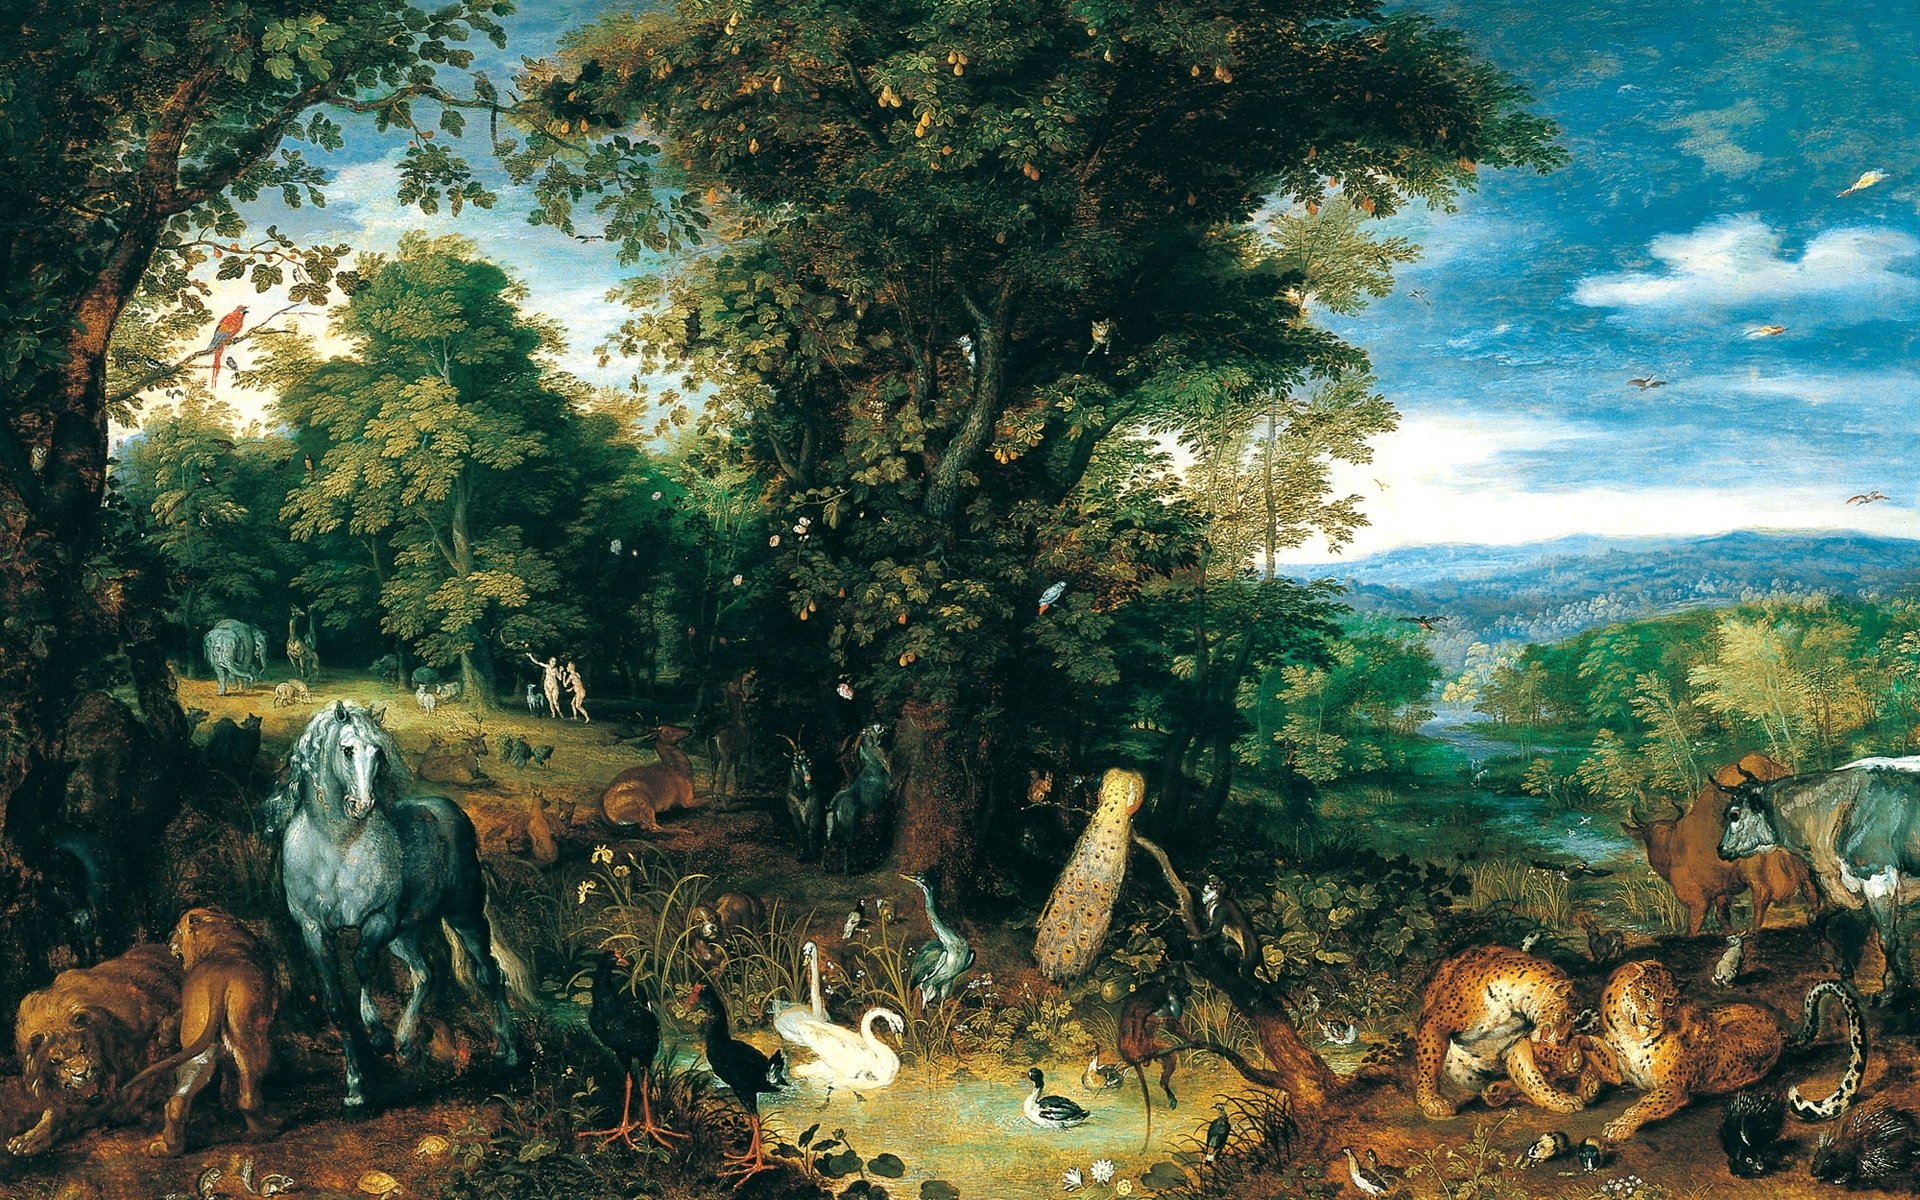 1920x1200 The Garden of Eden by Jan Brueghel the elder Wallpaper Background...